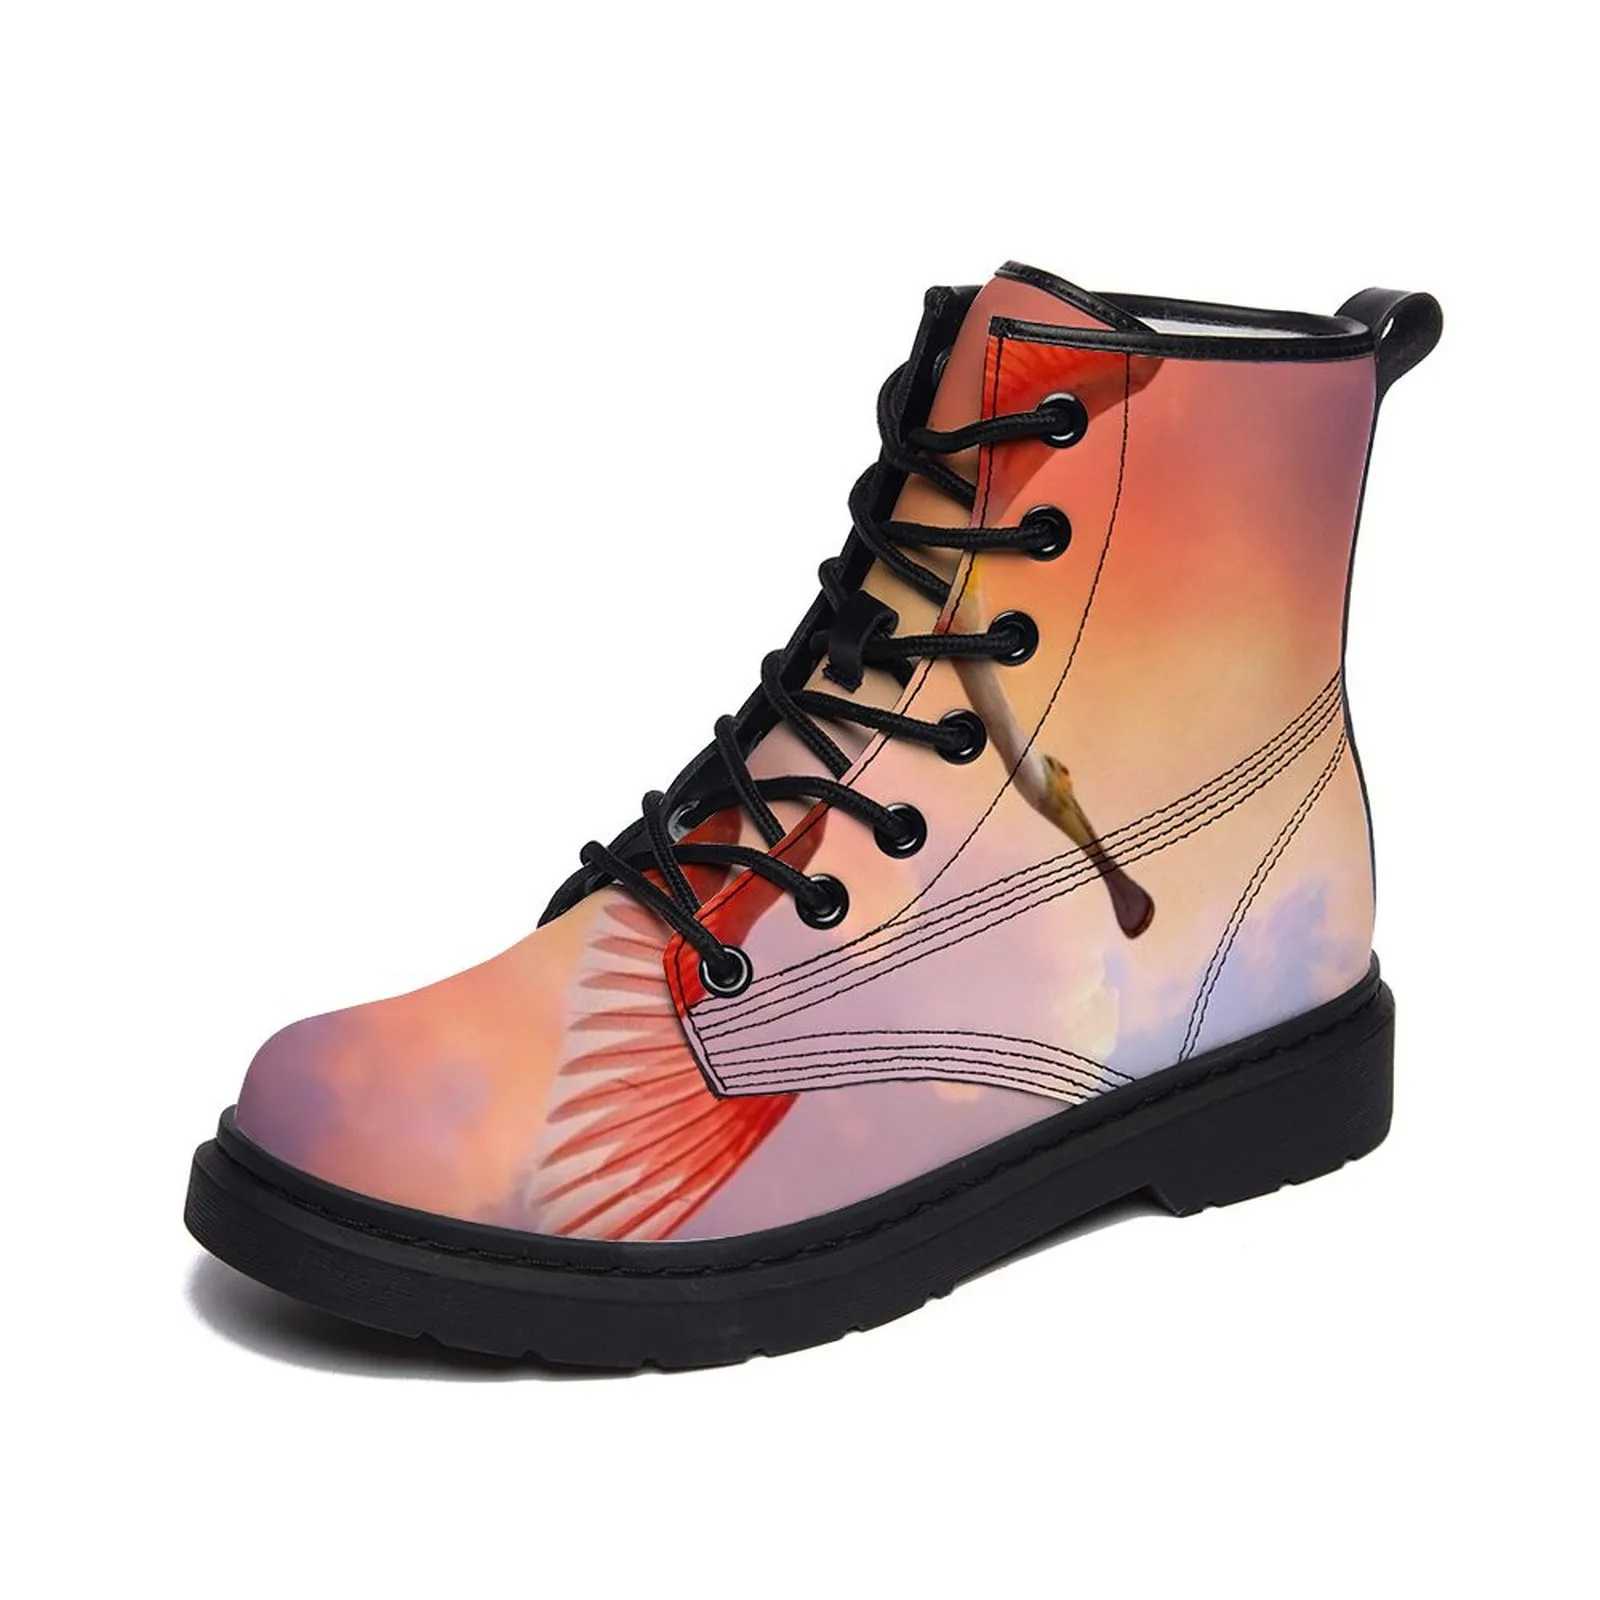 Botas de aduanas personalizadas hombres zapatos para hombres entrenadores para mujeres de moda deportes planos de zapatillas al aire libre boot gai